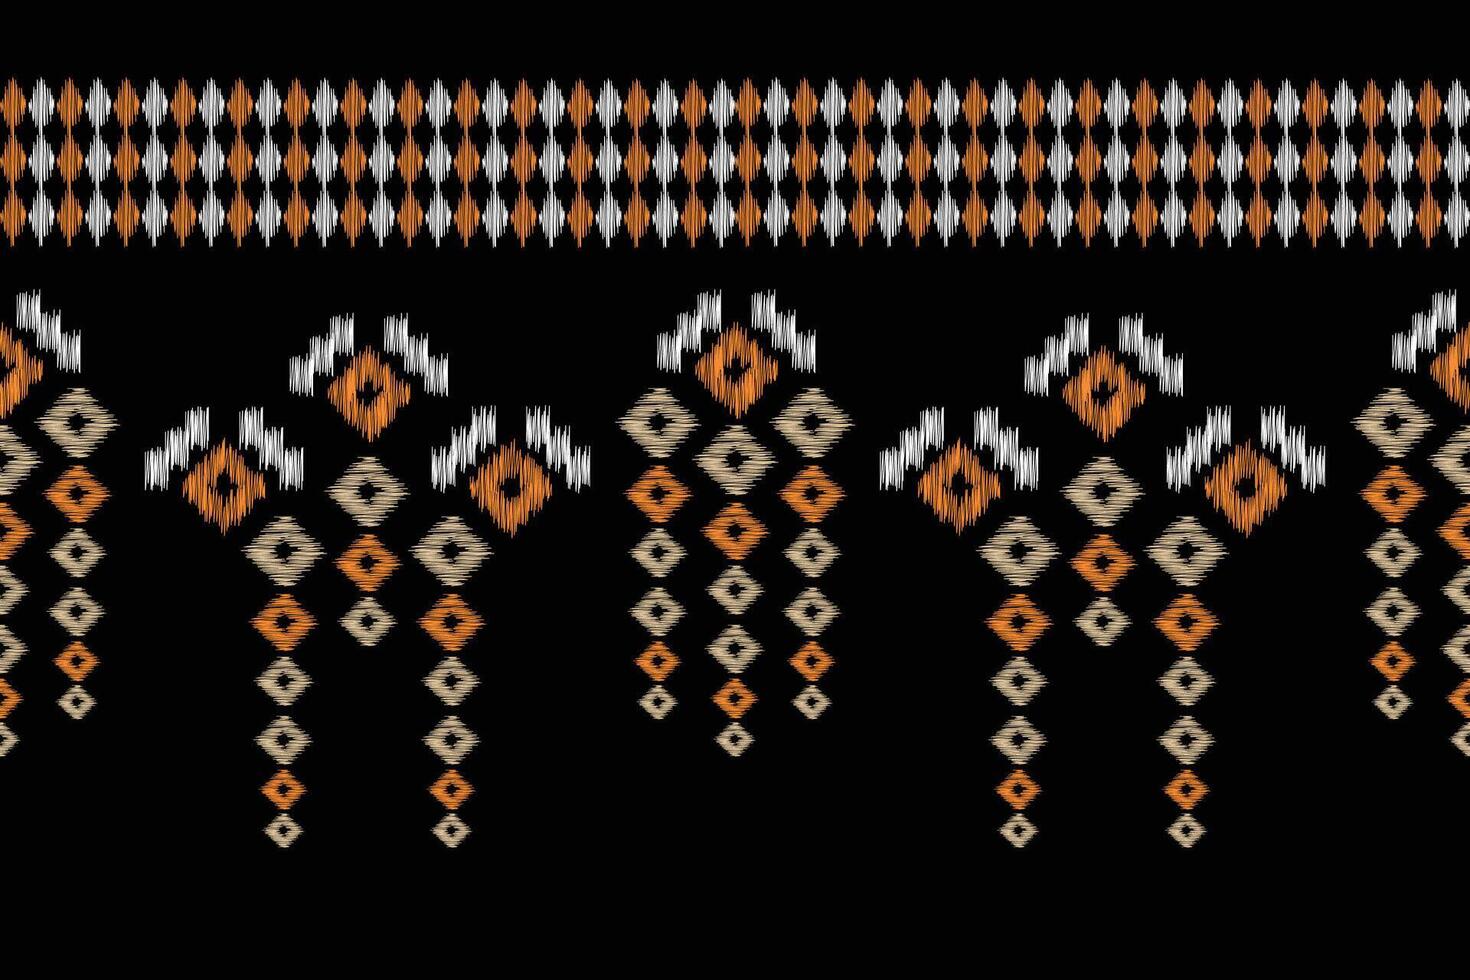 traditionnel ethnique ikat motif en tissu modèle géométrique style.africain ikat broderie ethnique Oriental modèle noir Contexte fond d'écran. résumé, vecteur, illustration.texture, cadre, décoration. vecteur